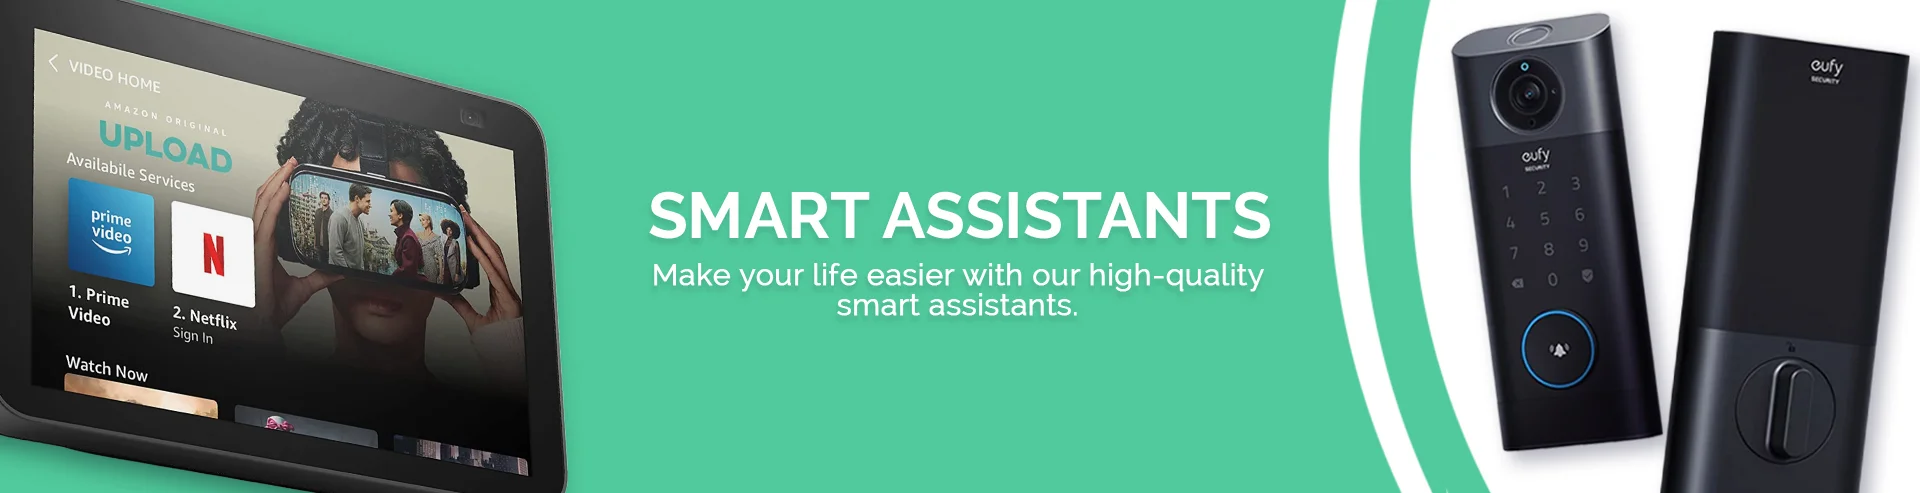 VM-Hero-Smart Assistants-1920x493.webp